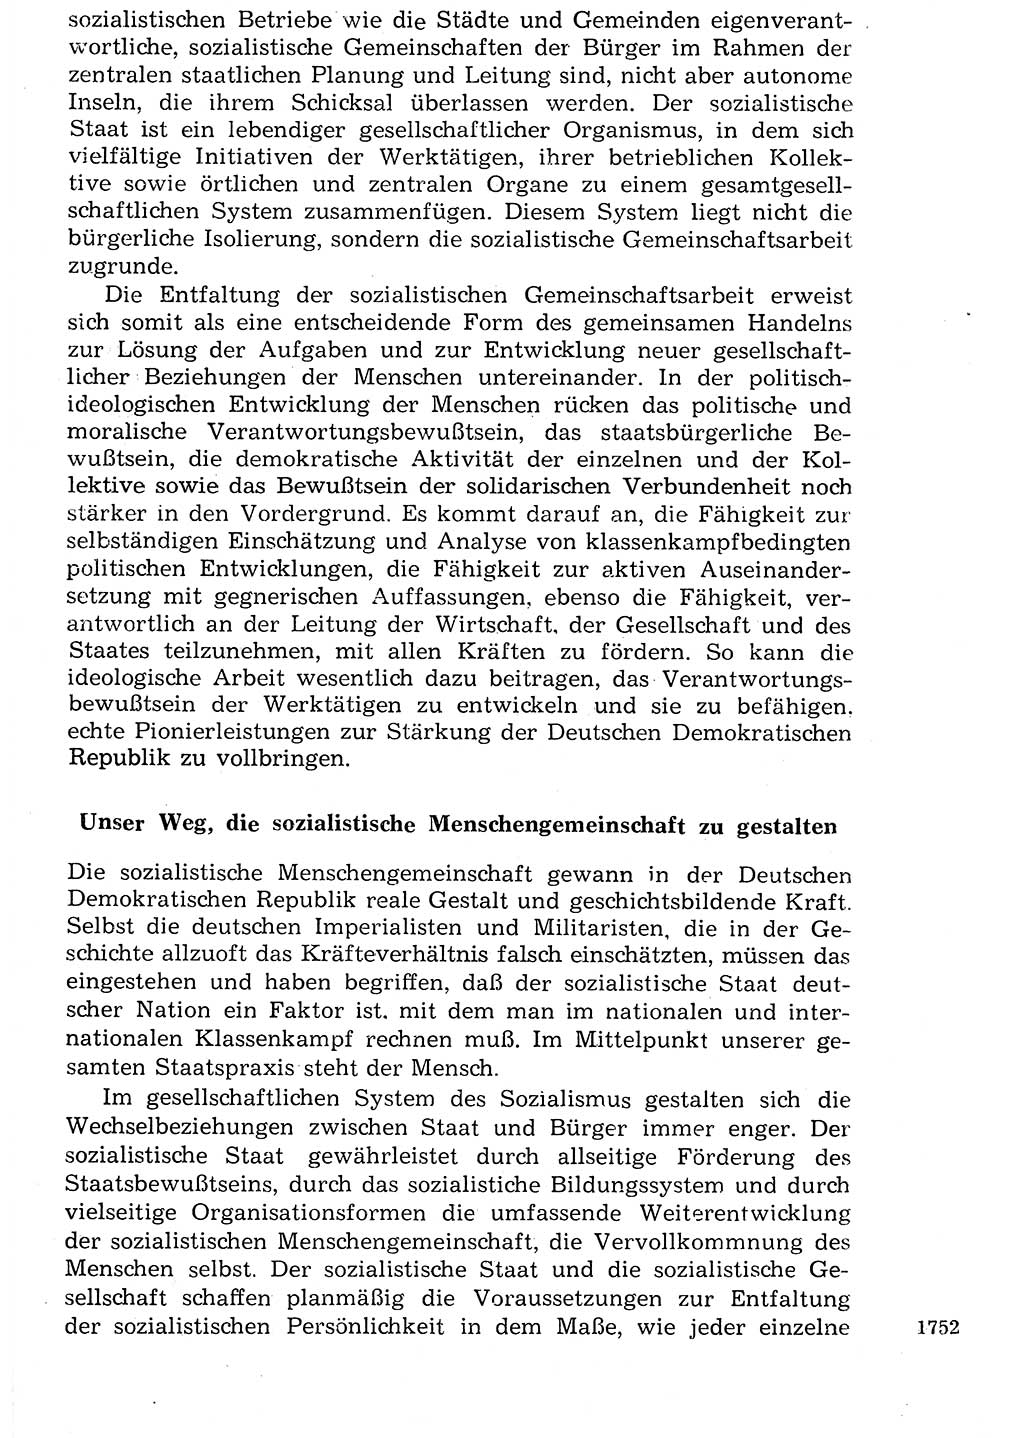 Staat und Recht (StuR), 17. Jahrgang [Deutsche Demokratische Republik (DDR)] 1968, Seite 1752 (StuR DDR 1968, S. 1752)